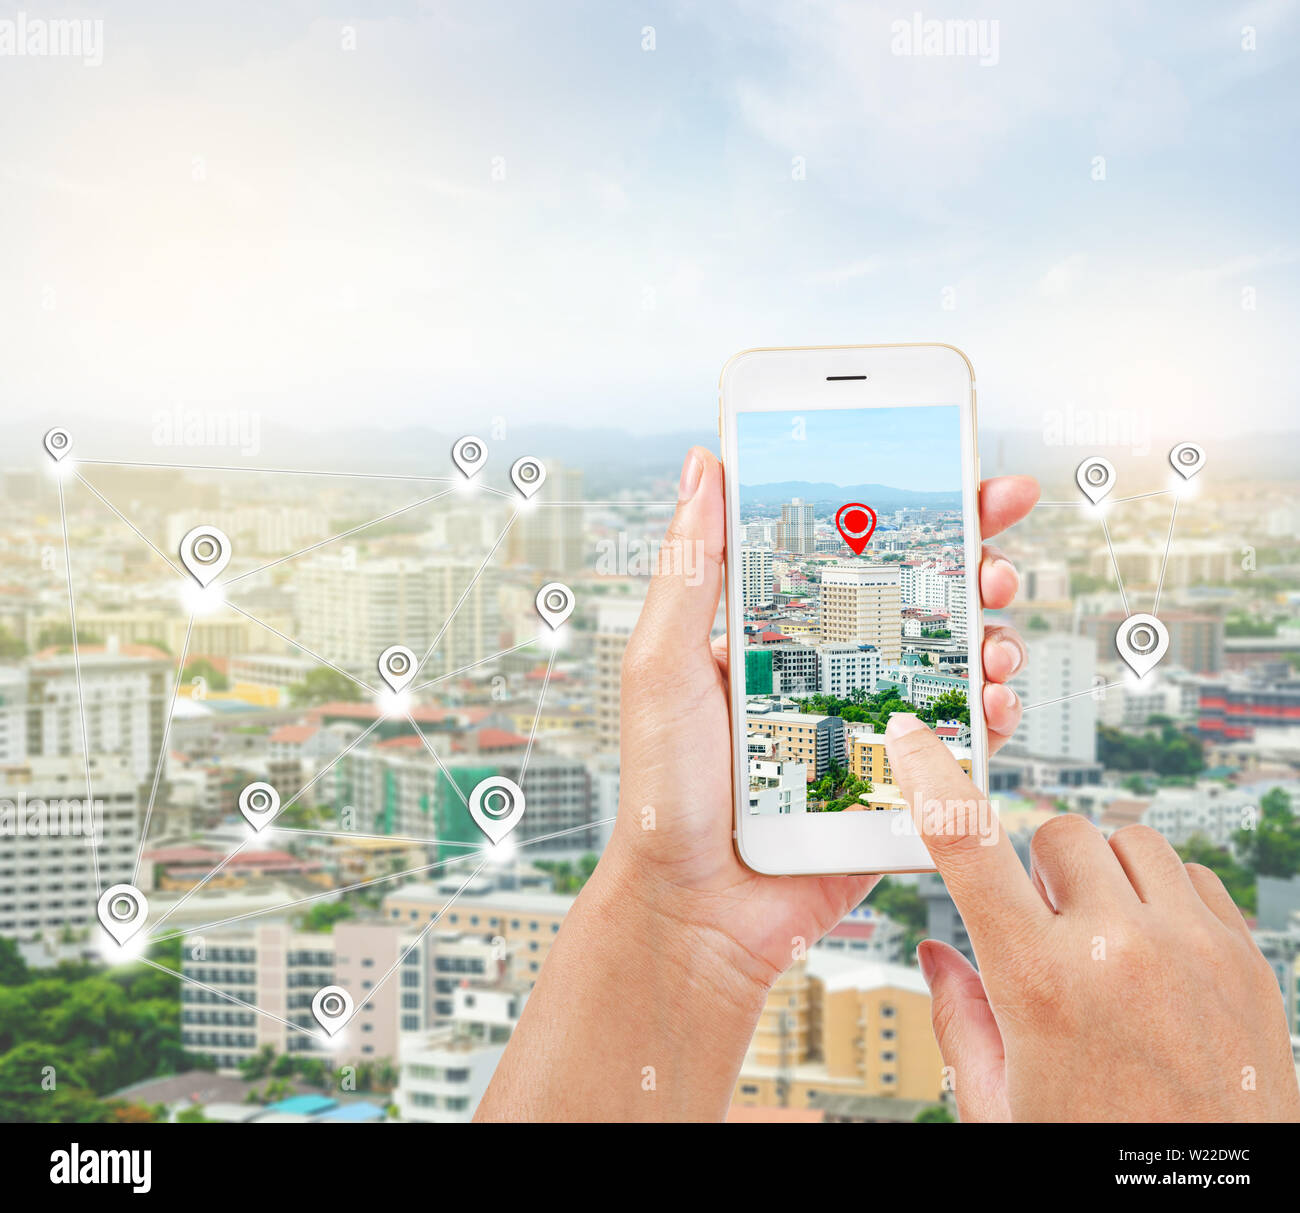 Les mains tenant un téléphone intelligent montrant une partie de navigator map sur écran sur la ligne de connexion sur la ville scape, concept de navigation. Banque D'Images